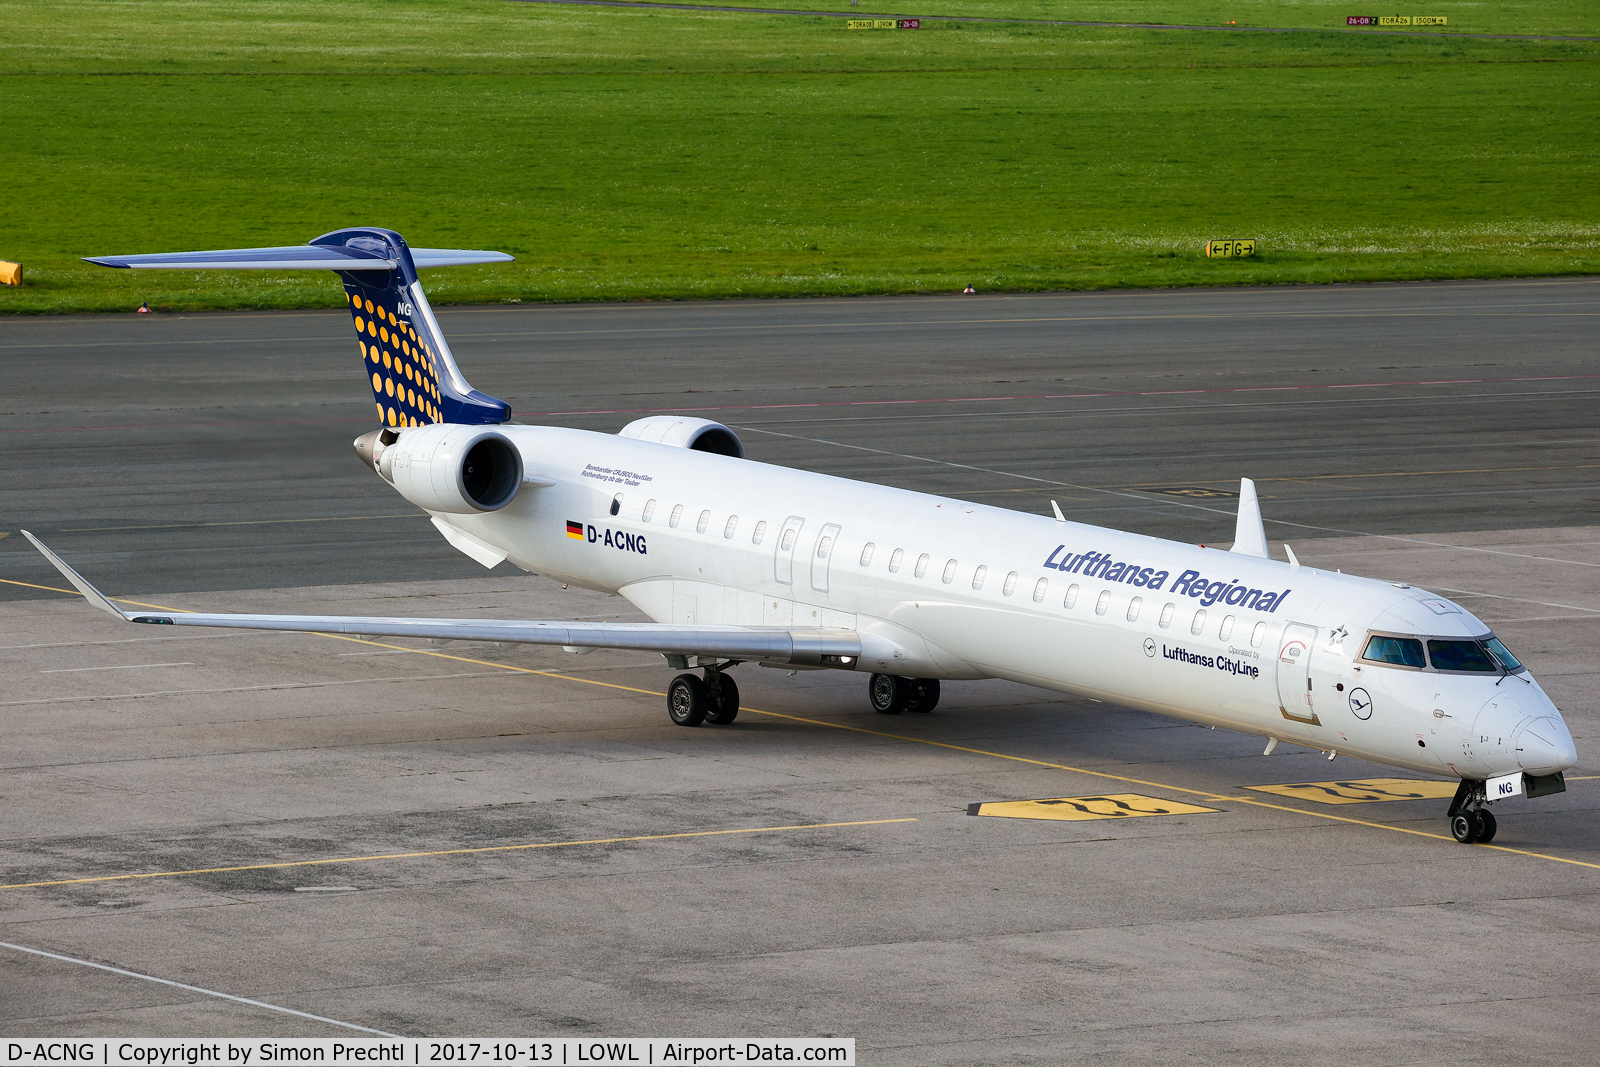 D-ACNG, 2009 Bombardier CRJ-900LR (CL-600-2D24) C/N 15245, D-ACNG @ Linz Airport